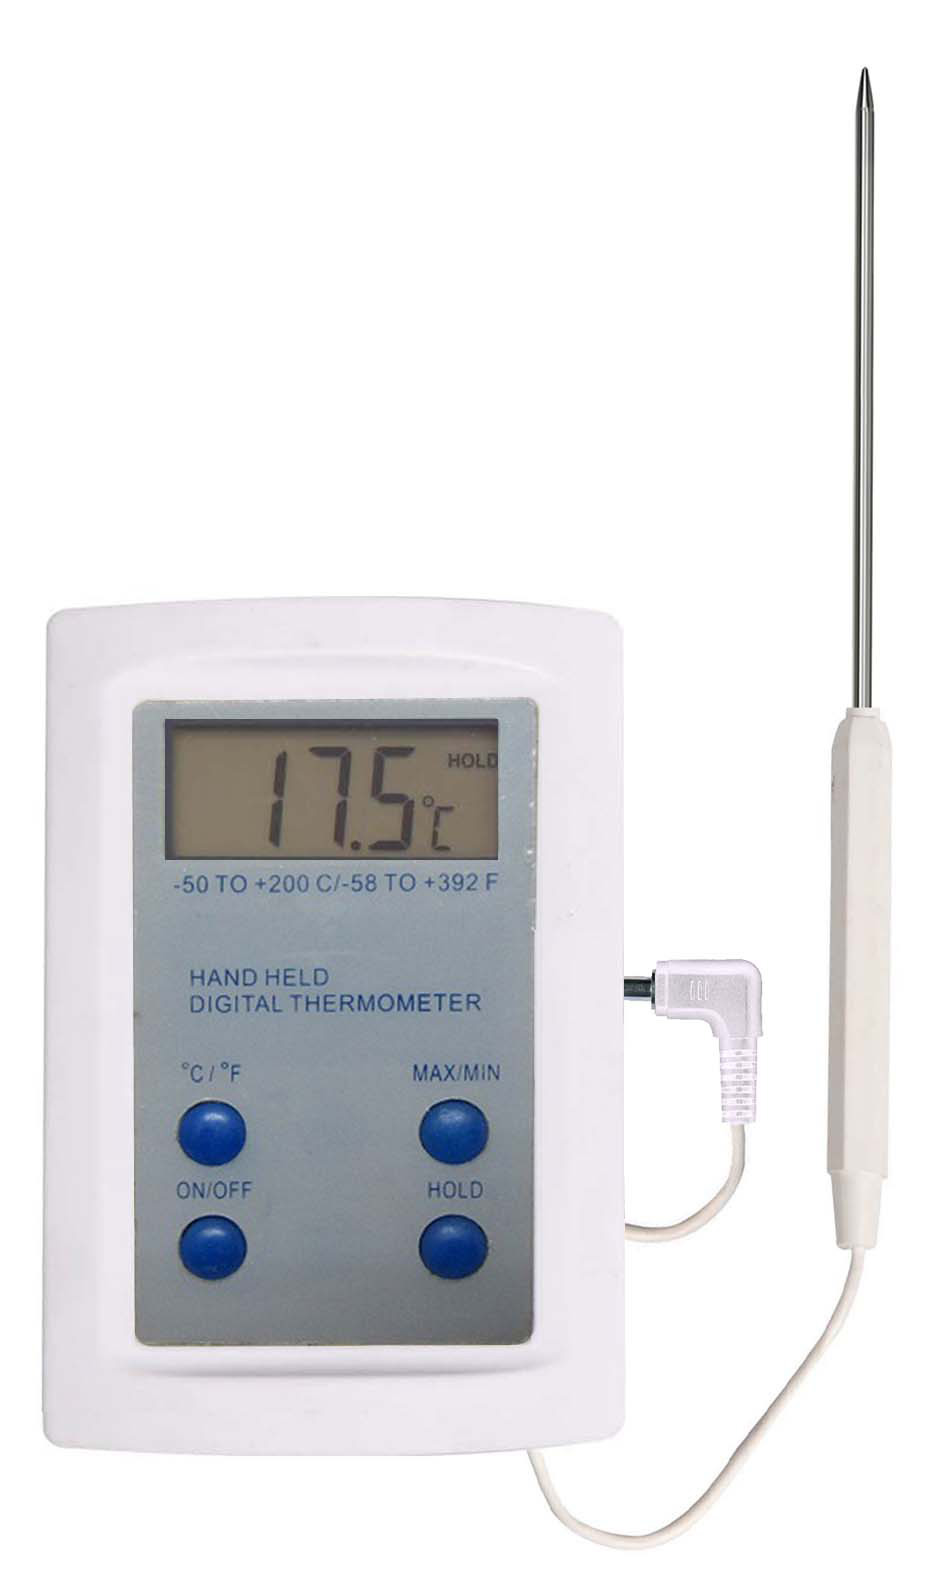 Termometro digitale sonda estraibile - Termometri in vetro bio-Termometri -  Analisi - Misure - Microbiologia - Strumentazione per laboratorio